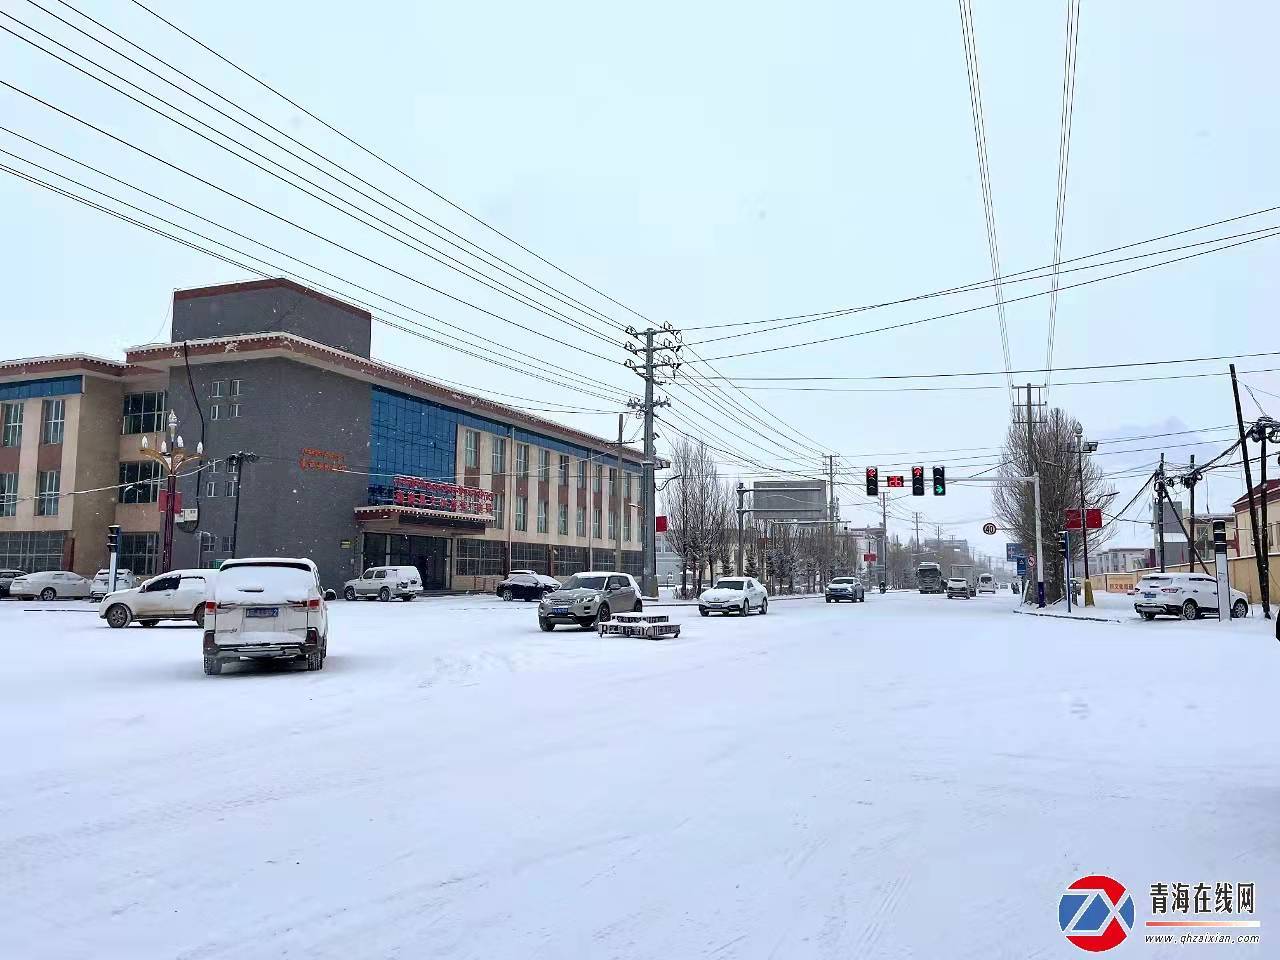 赏雪景啦！囊谦县城落了一场近十年来最大的雪